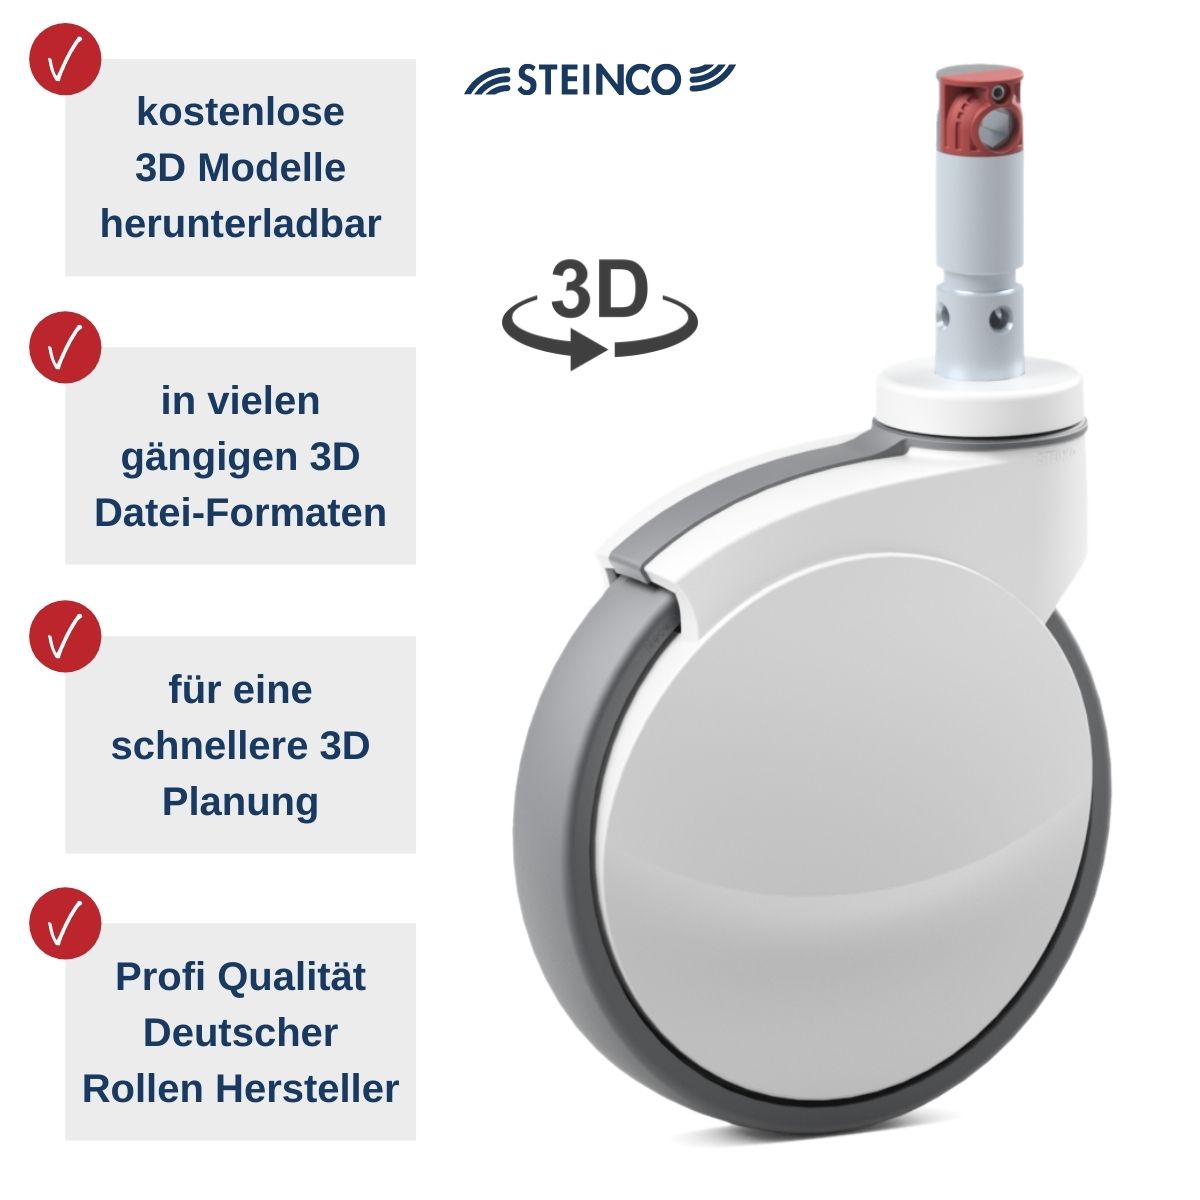 [Translate to Schwedisch:] Steinco Medical Rollen - kostenlose 3D Modelle in vielen Dateiformaten für Planer, Konstrukteure, Projekteure und Produktentwickler